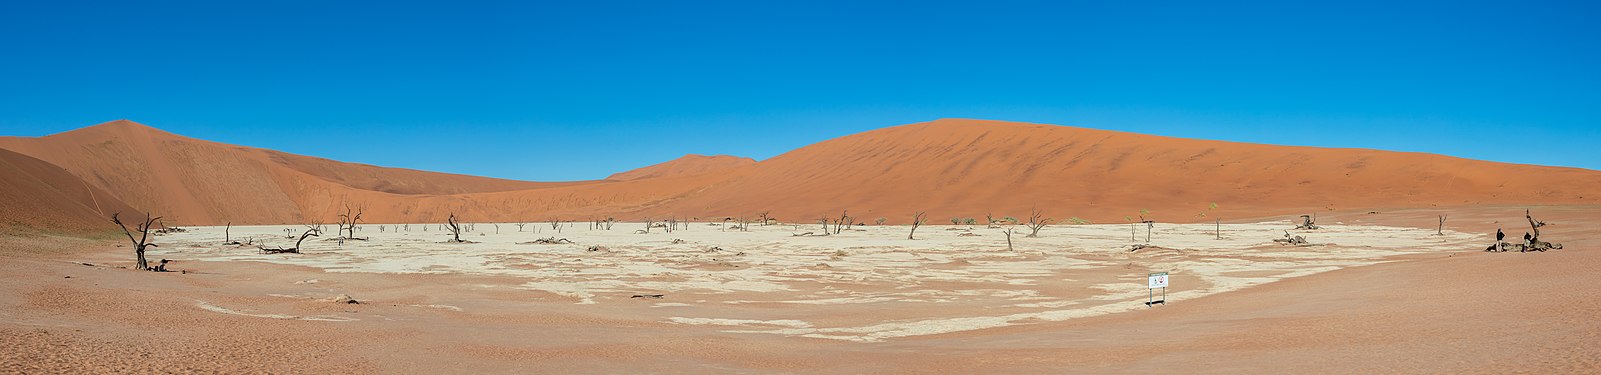 Dead Vlei, Sossusvlei, Namibia.